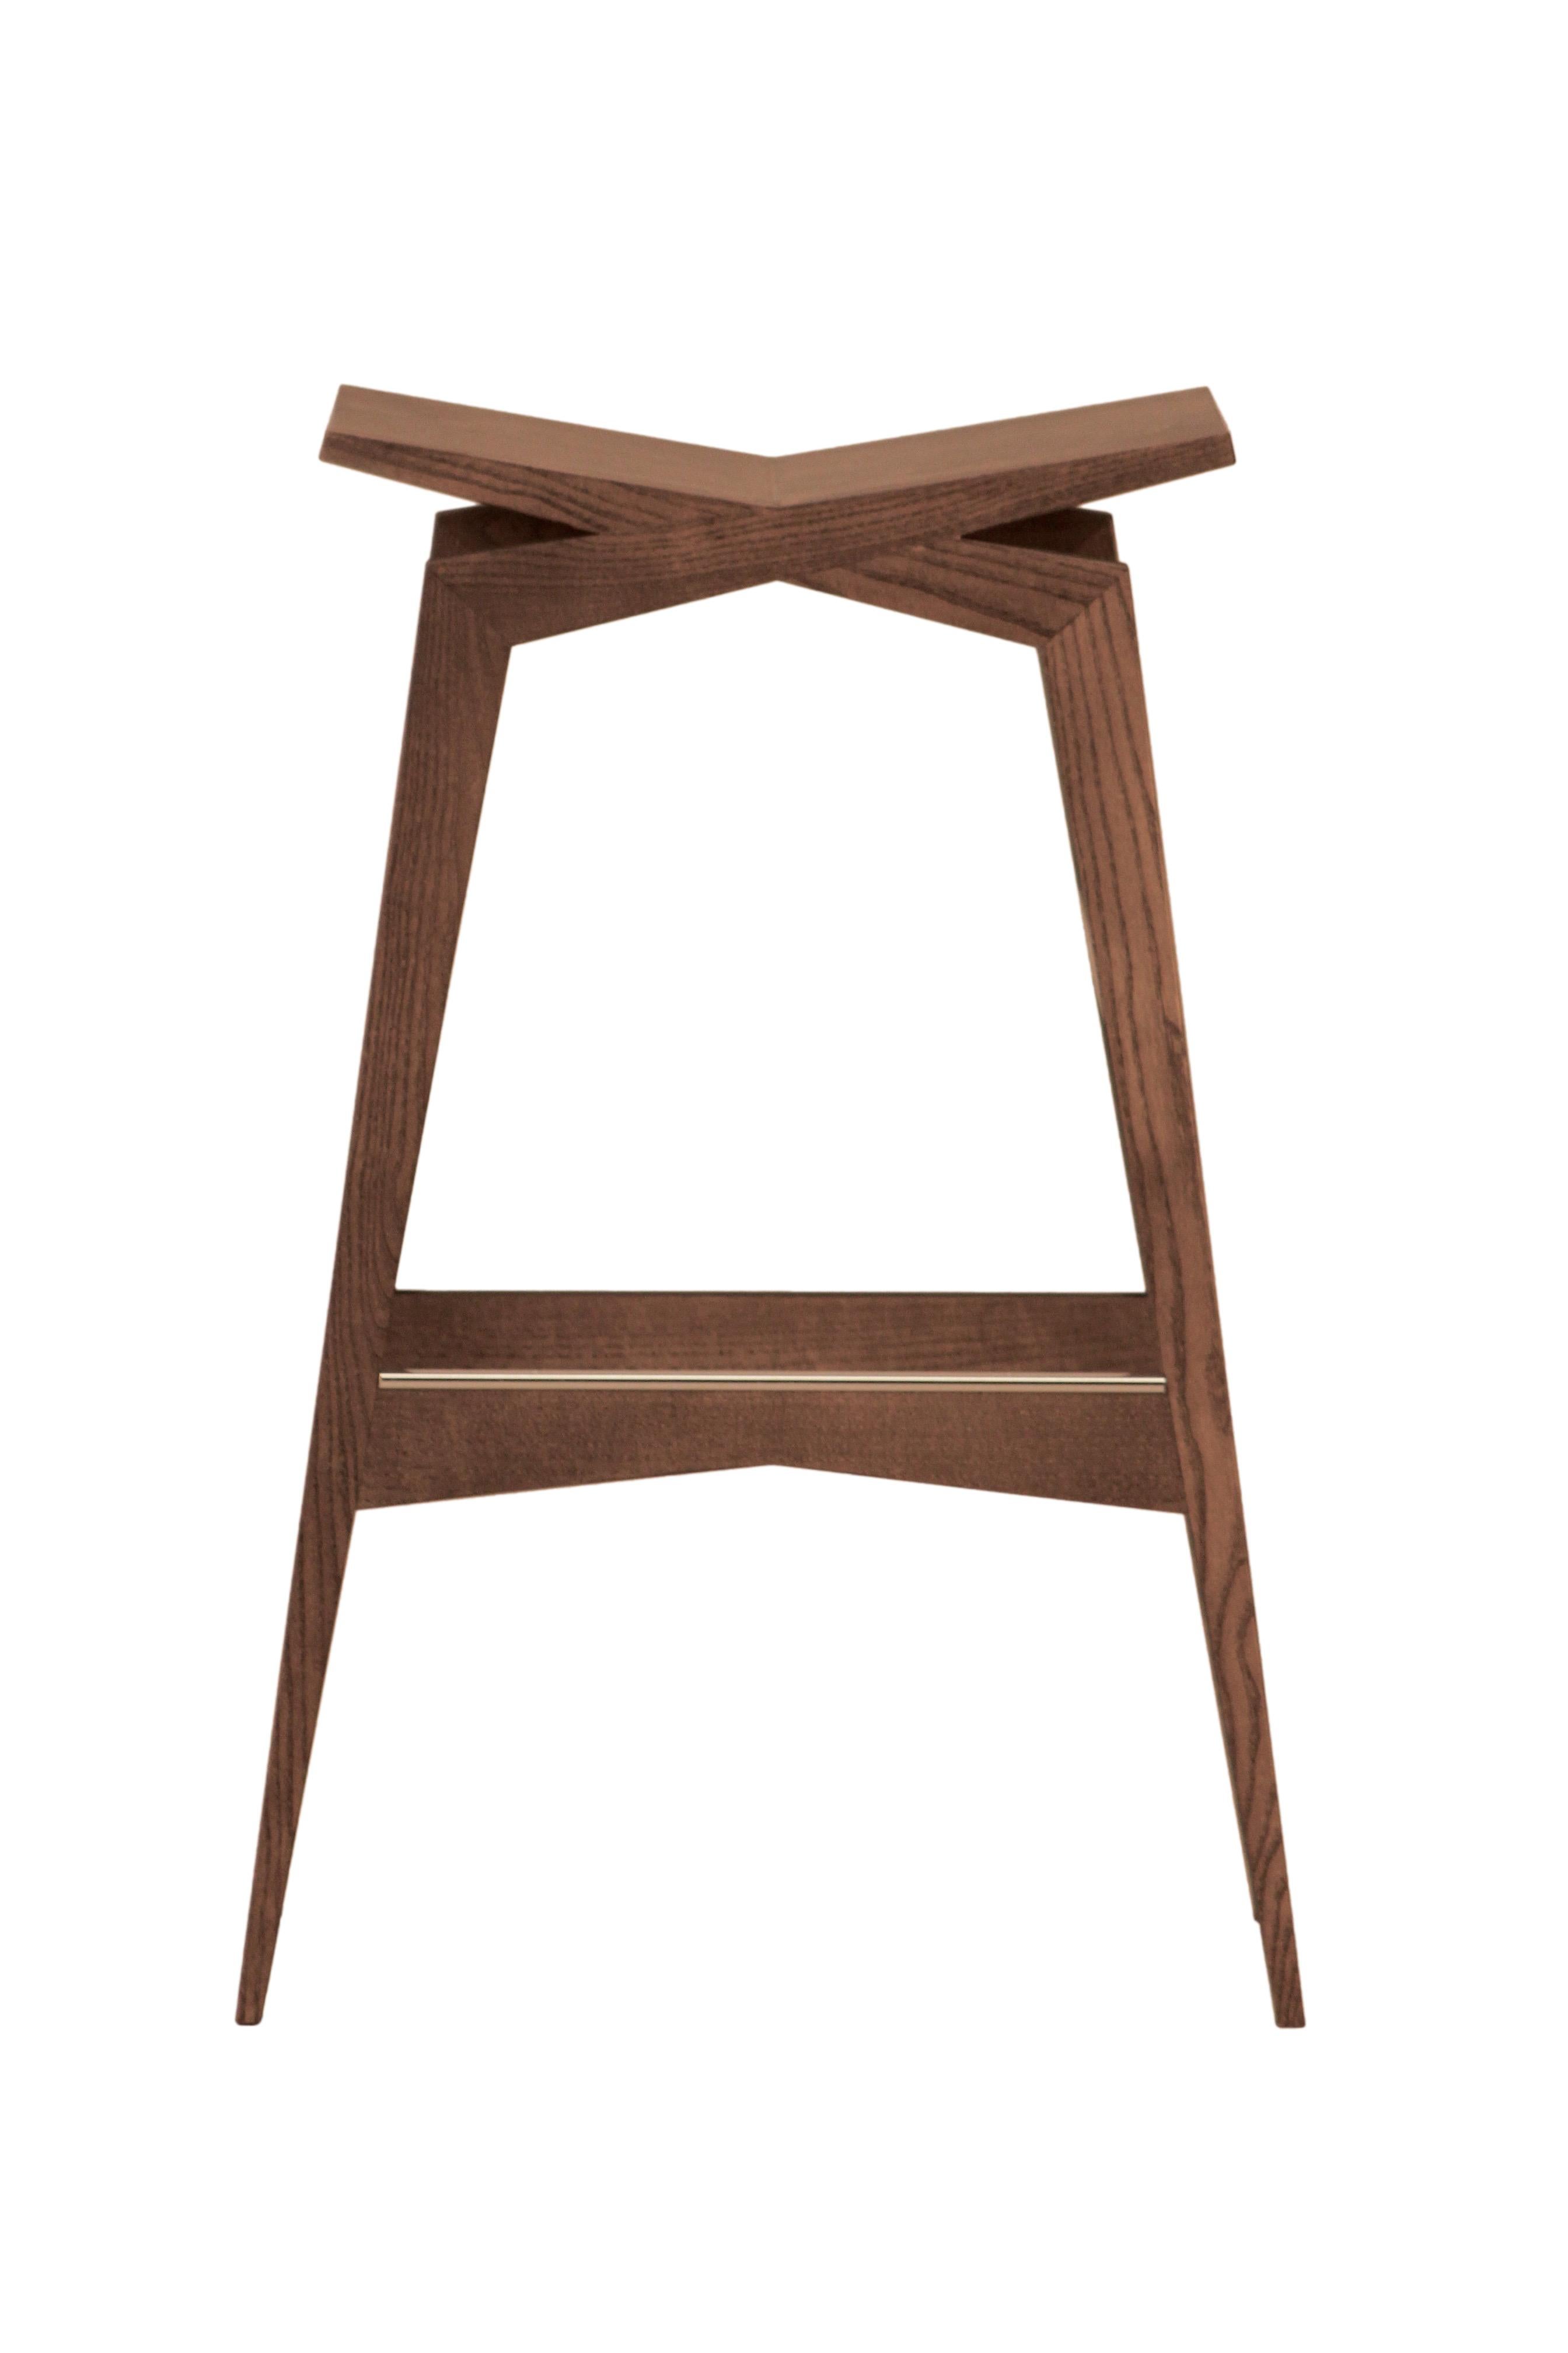 Icaro, moderner Barhocker aus massivem Eschenholz.
Entwurf Itamar Harari
Erhältlich in verschiedenen Sitzhöhen 62 - 74 cm
hergestellt in Italien von Morelato

 